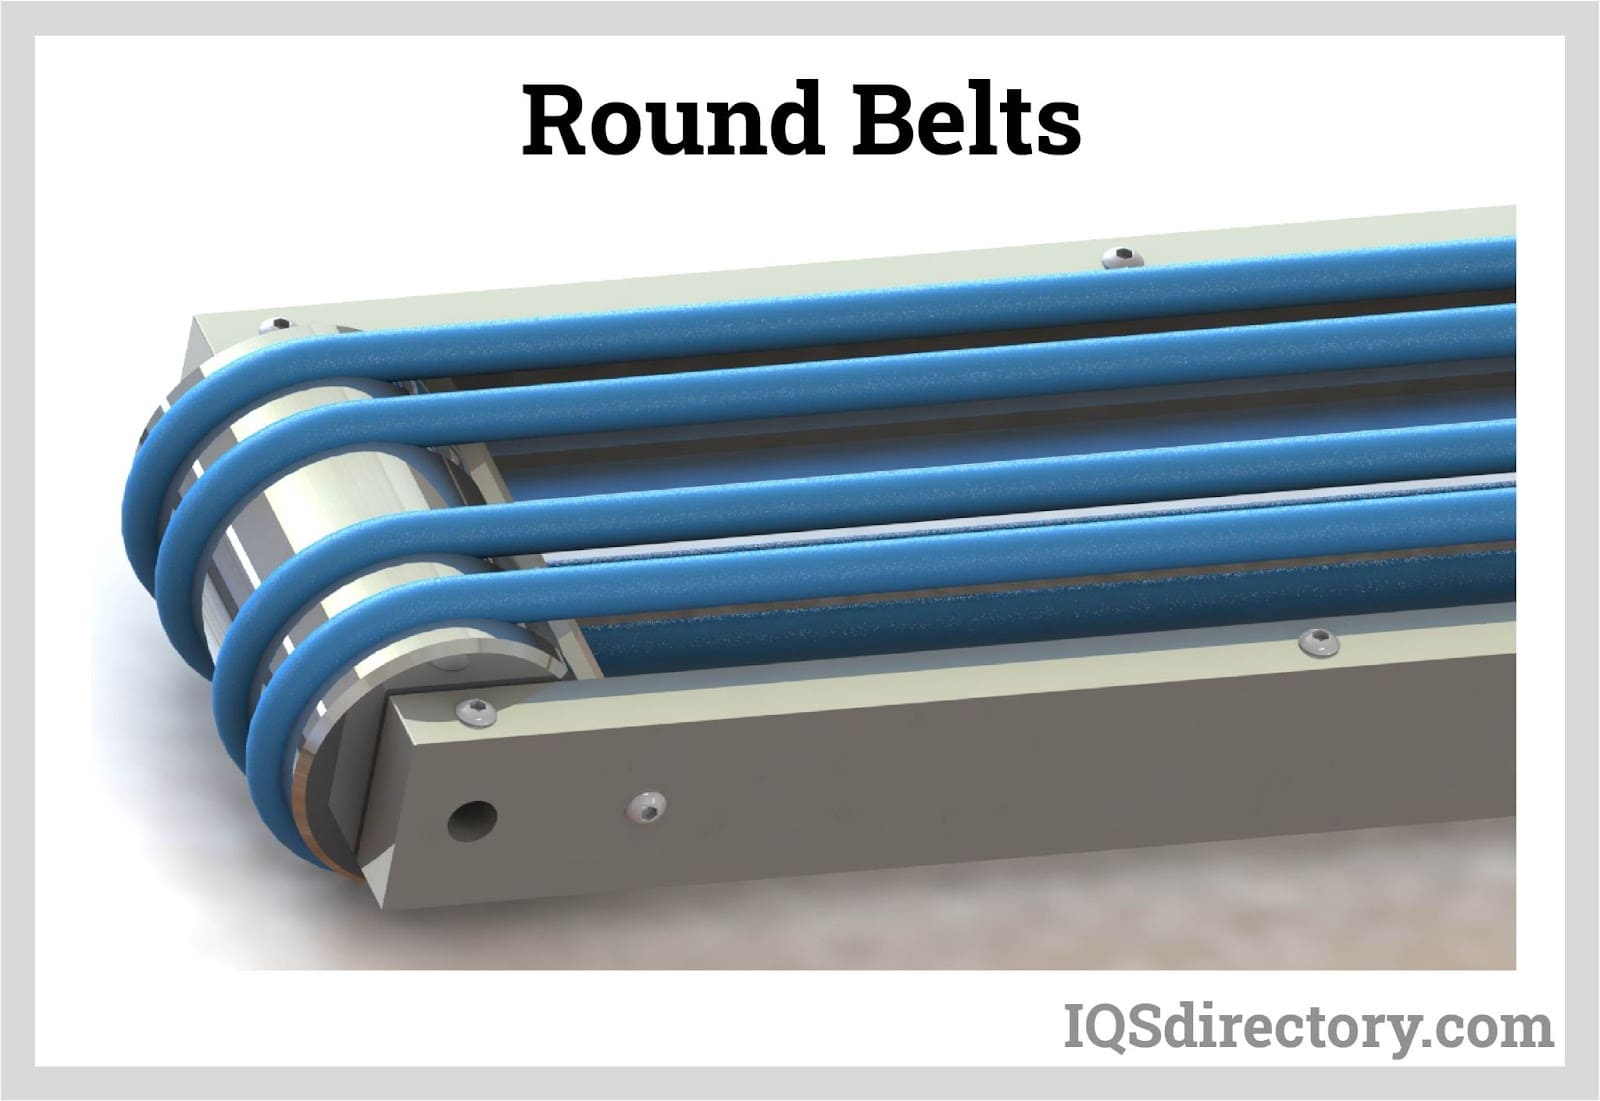 Round Belts